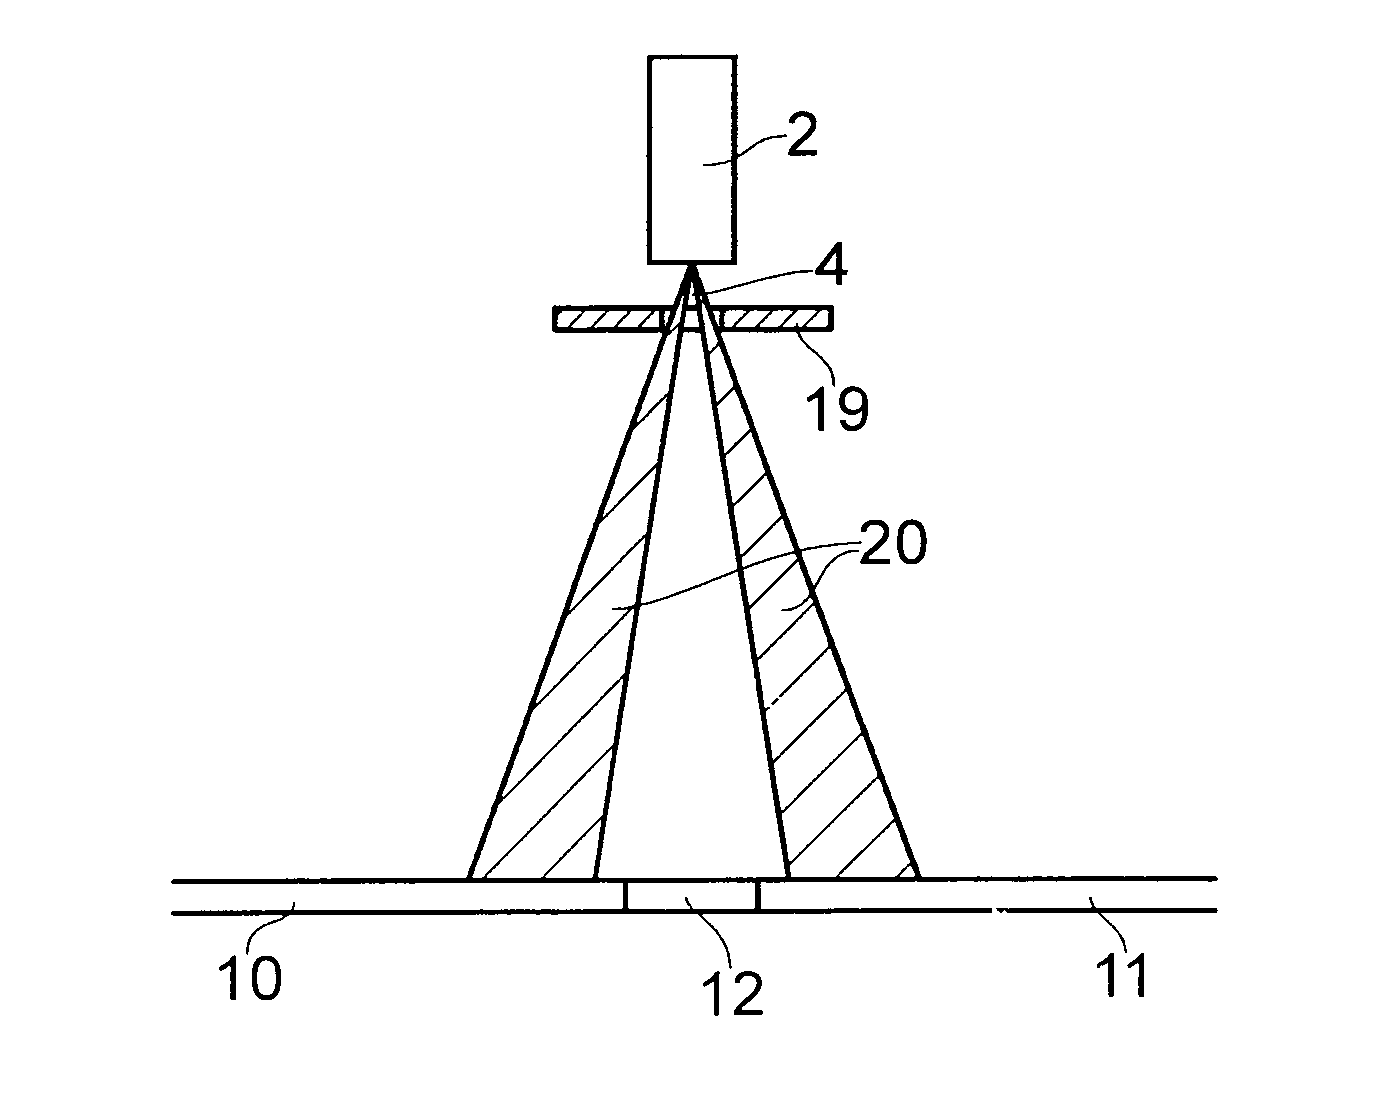 Optical triangulation sensor